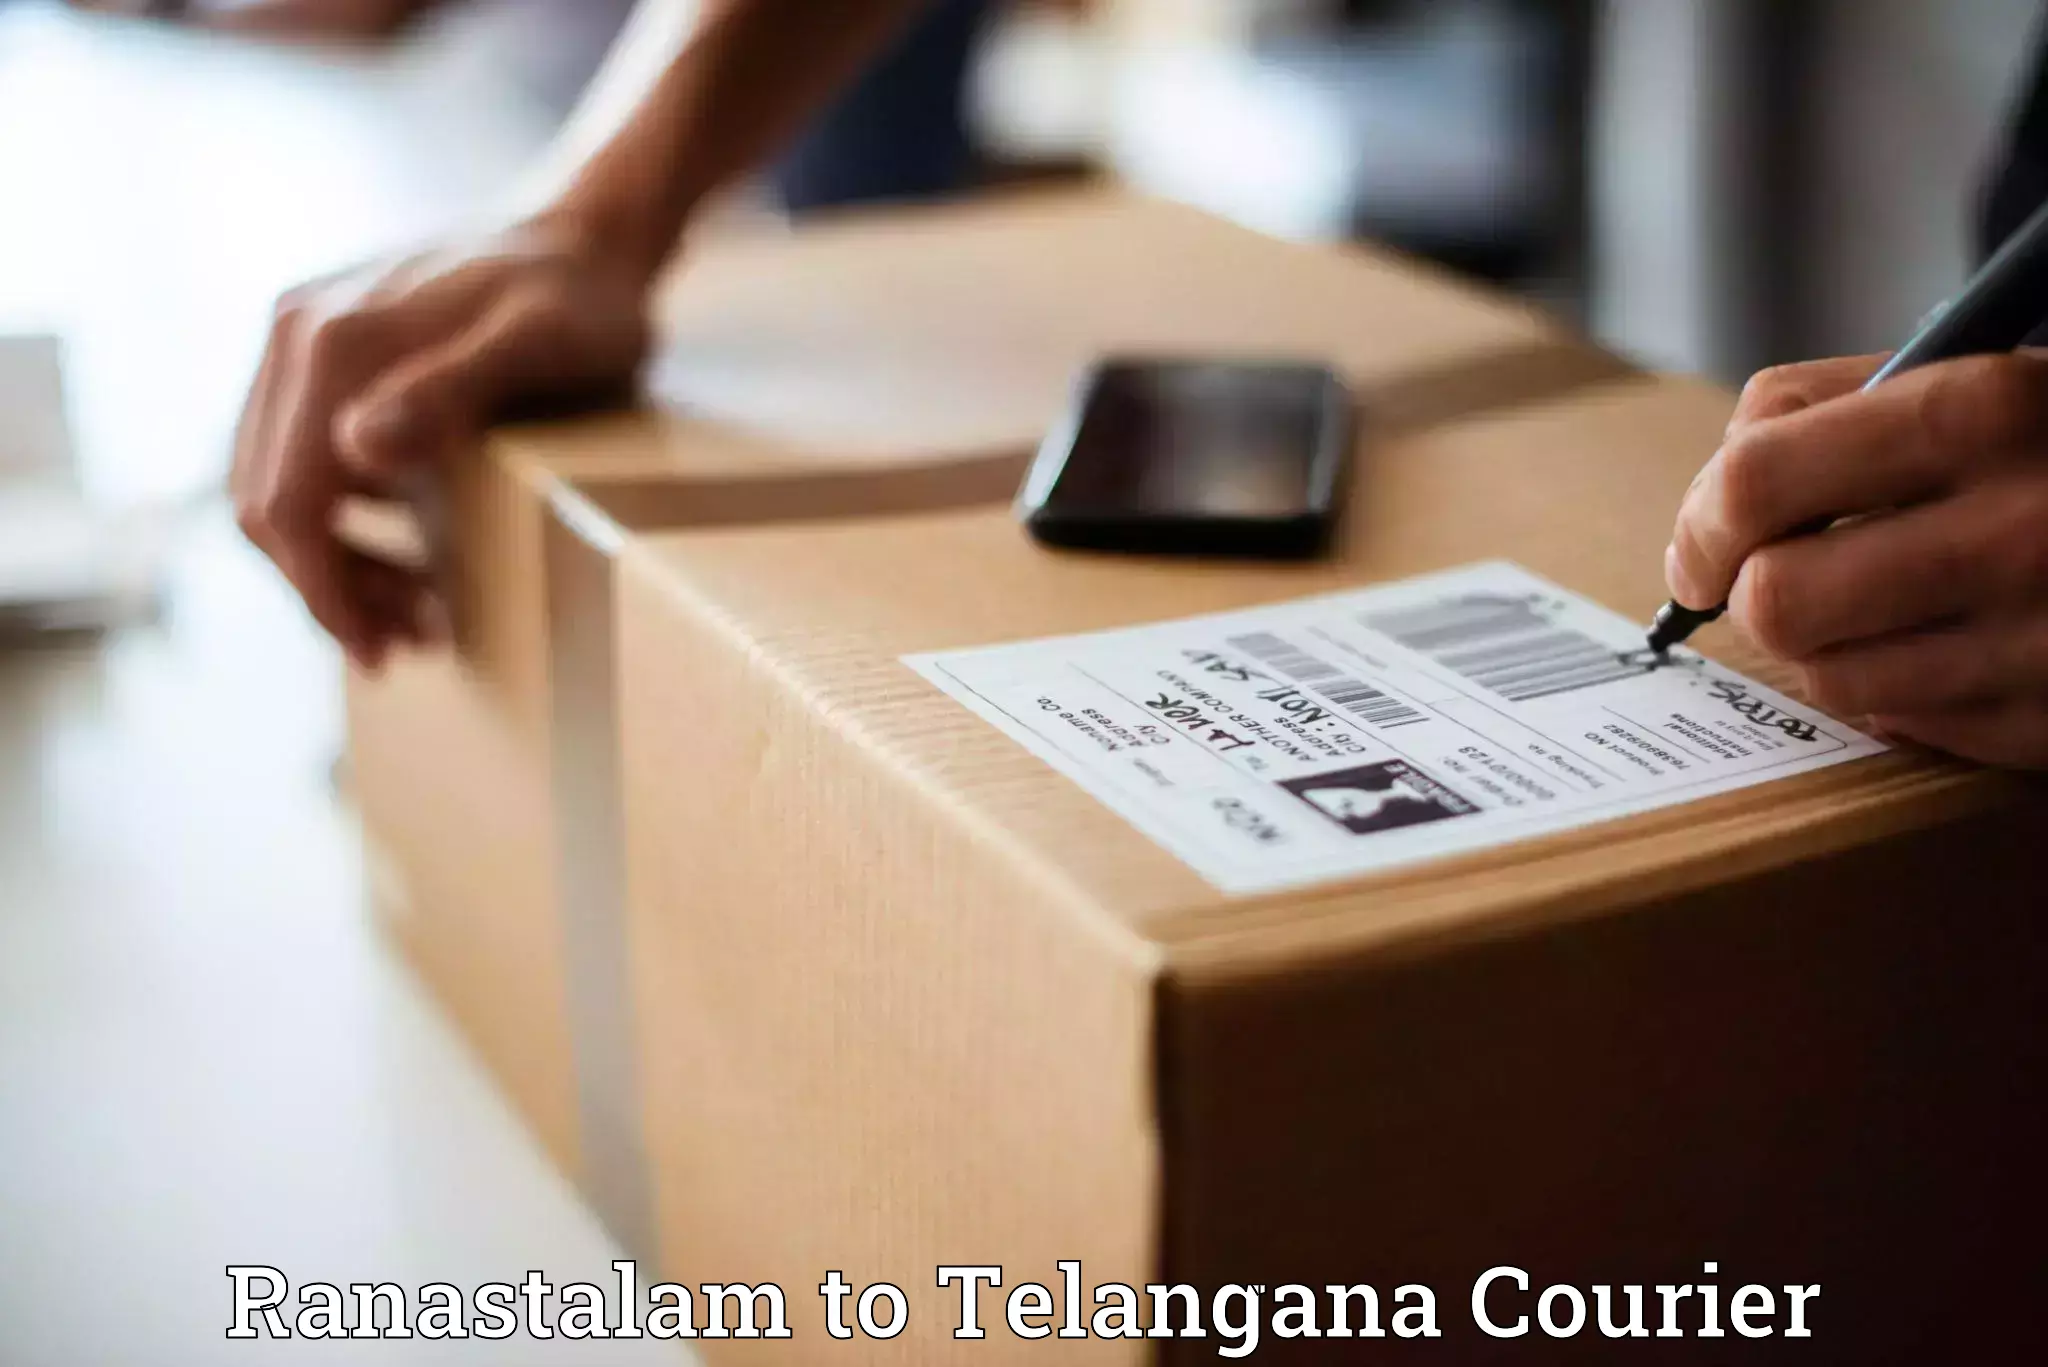 Innovative courier solutions in Ranastalam to Mahabubnagar